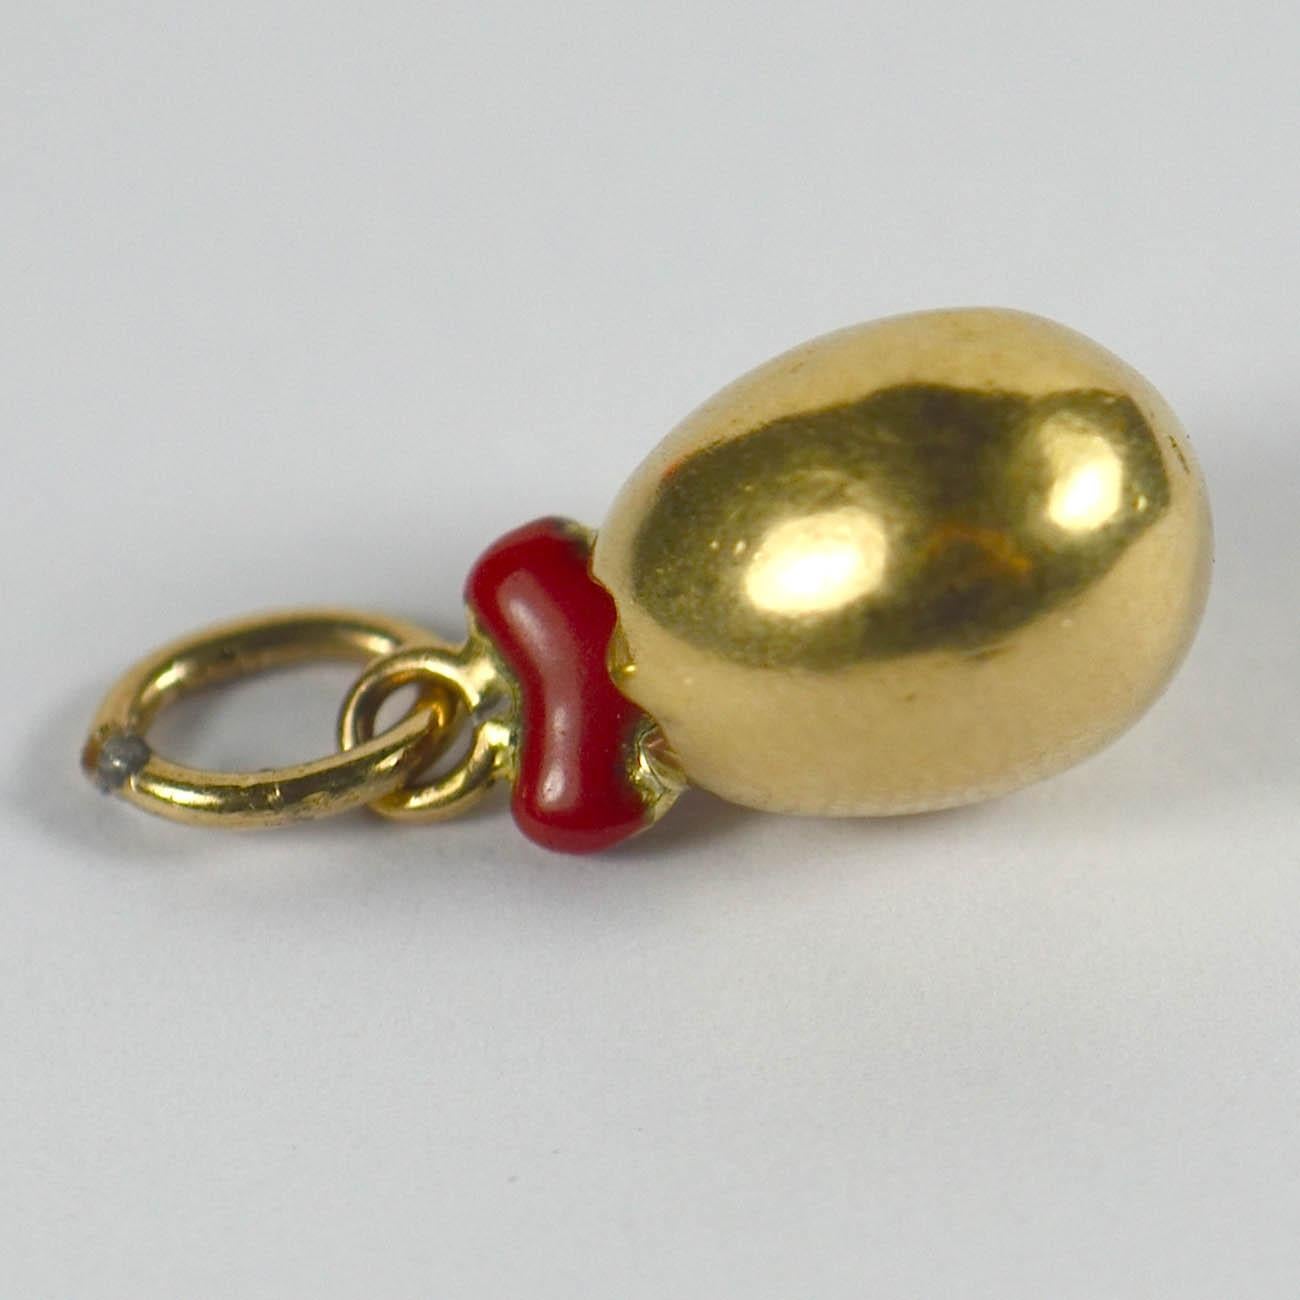 Women's or Men's Birth of Love Gold Enamel Egg Heart Charm Pendant